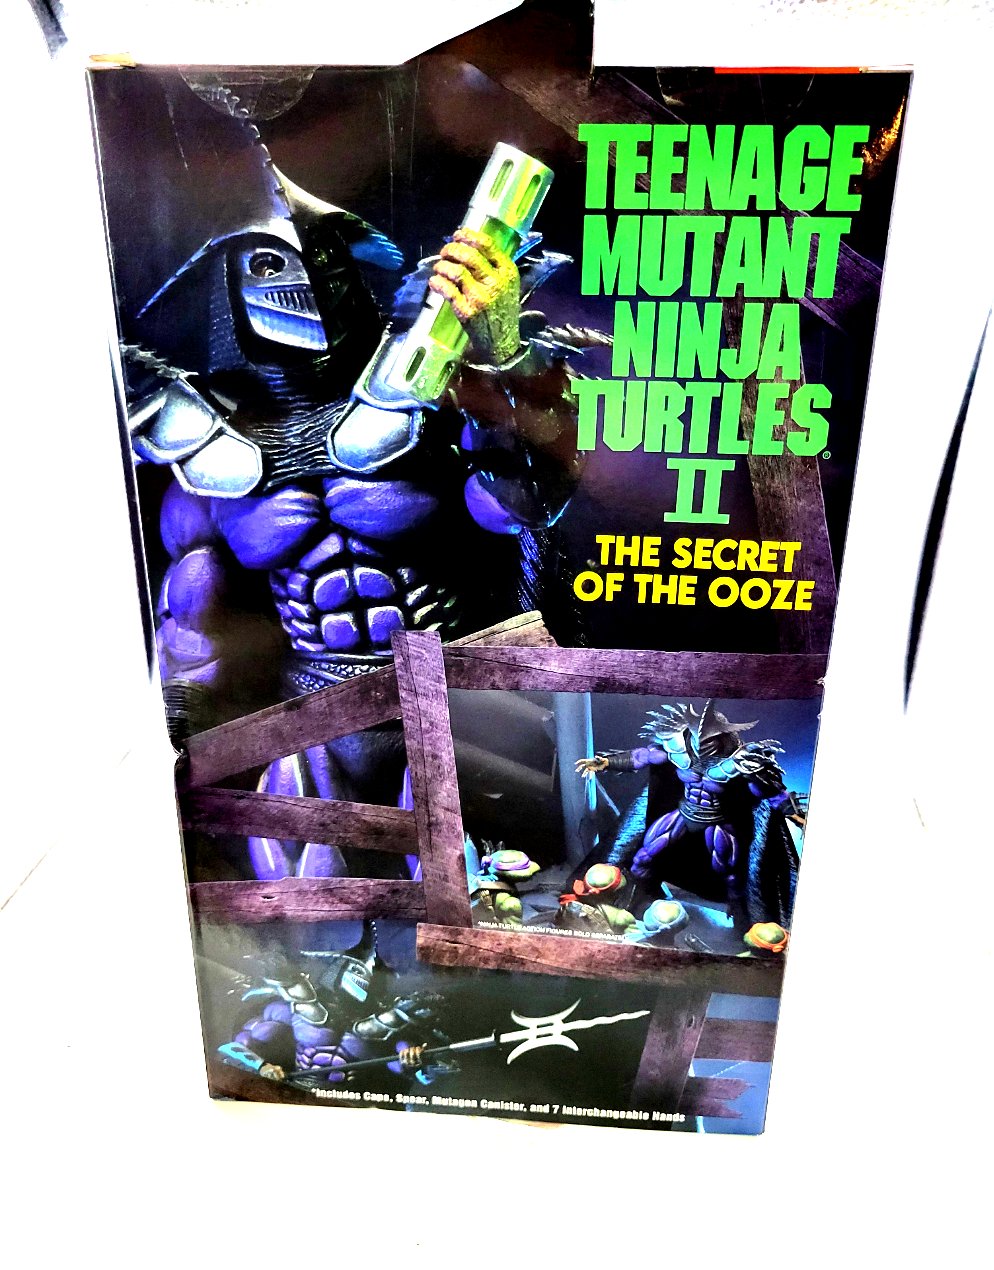 Neca Teenage Mutant Ninja Turtles II The Secret Of The Ooze Super Shredder Ultimate Action Figure